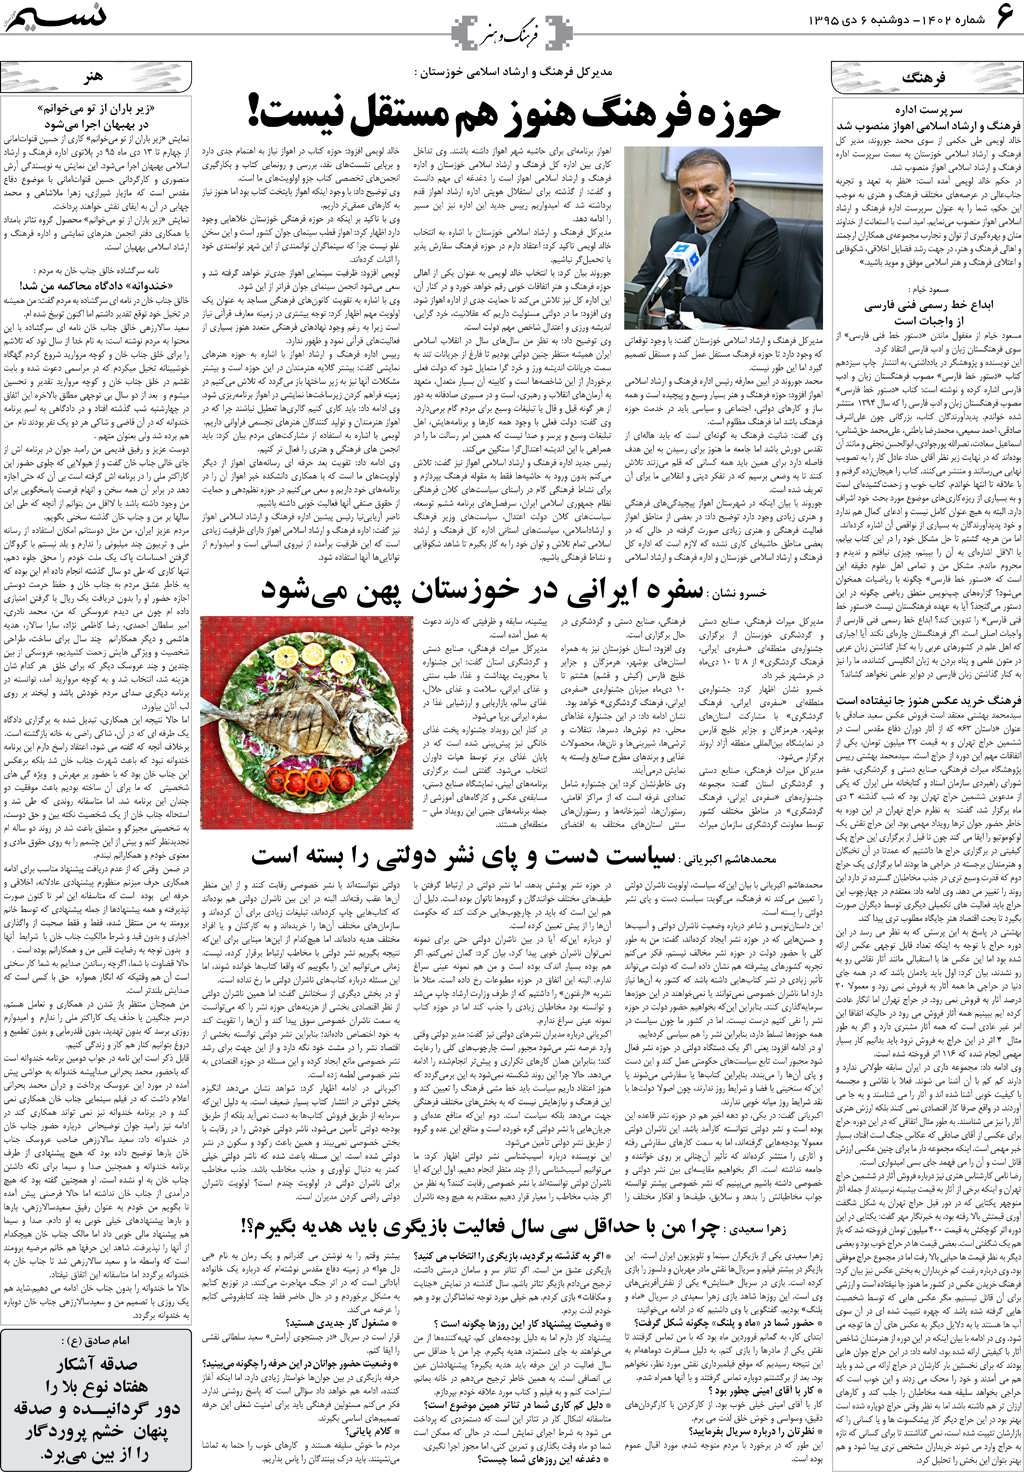 صفحه فرهنگ و هنر روزنامه نسیم شماره 1402